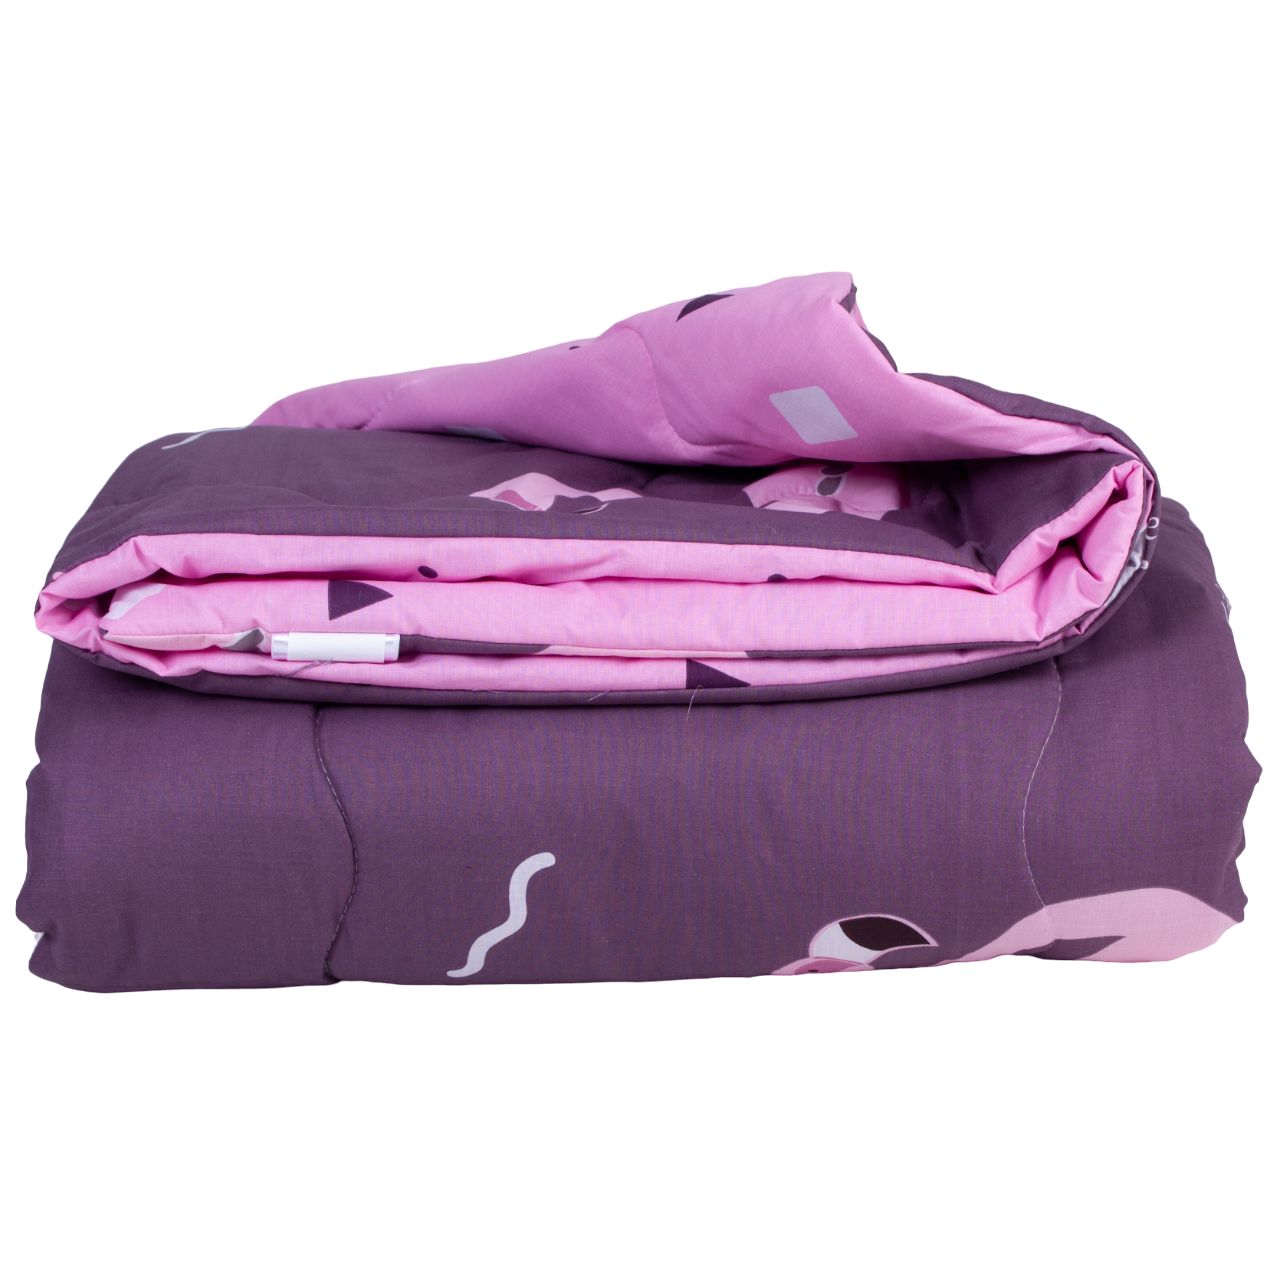 Одеяло хлопковое MirSon Деми №2820 Сolor Fun Line Nice, евростандарт, 220х200 см, фиолетовое (2200006700272) - фото 2